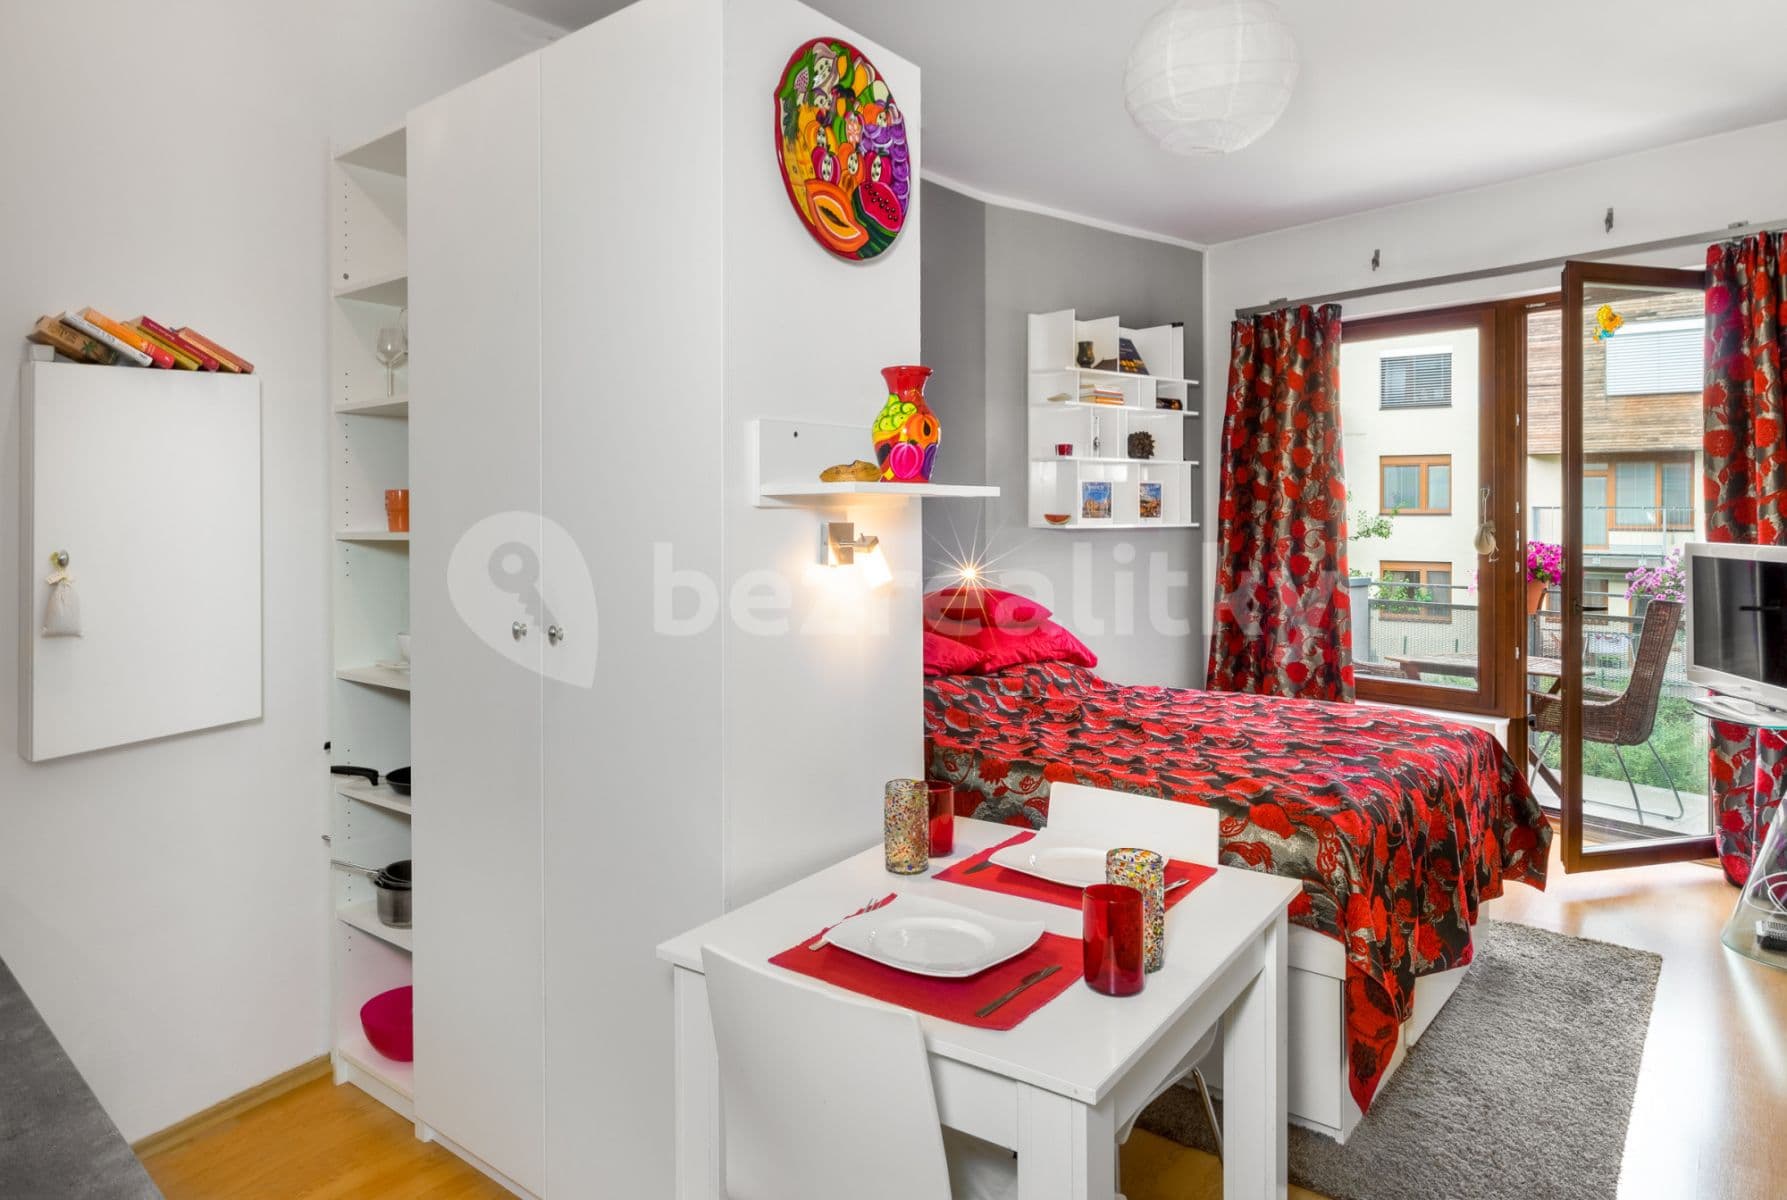 1 bedroom flat to rent, 30 m², Jeřabinová, Prague, Prague